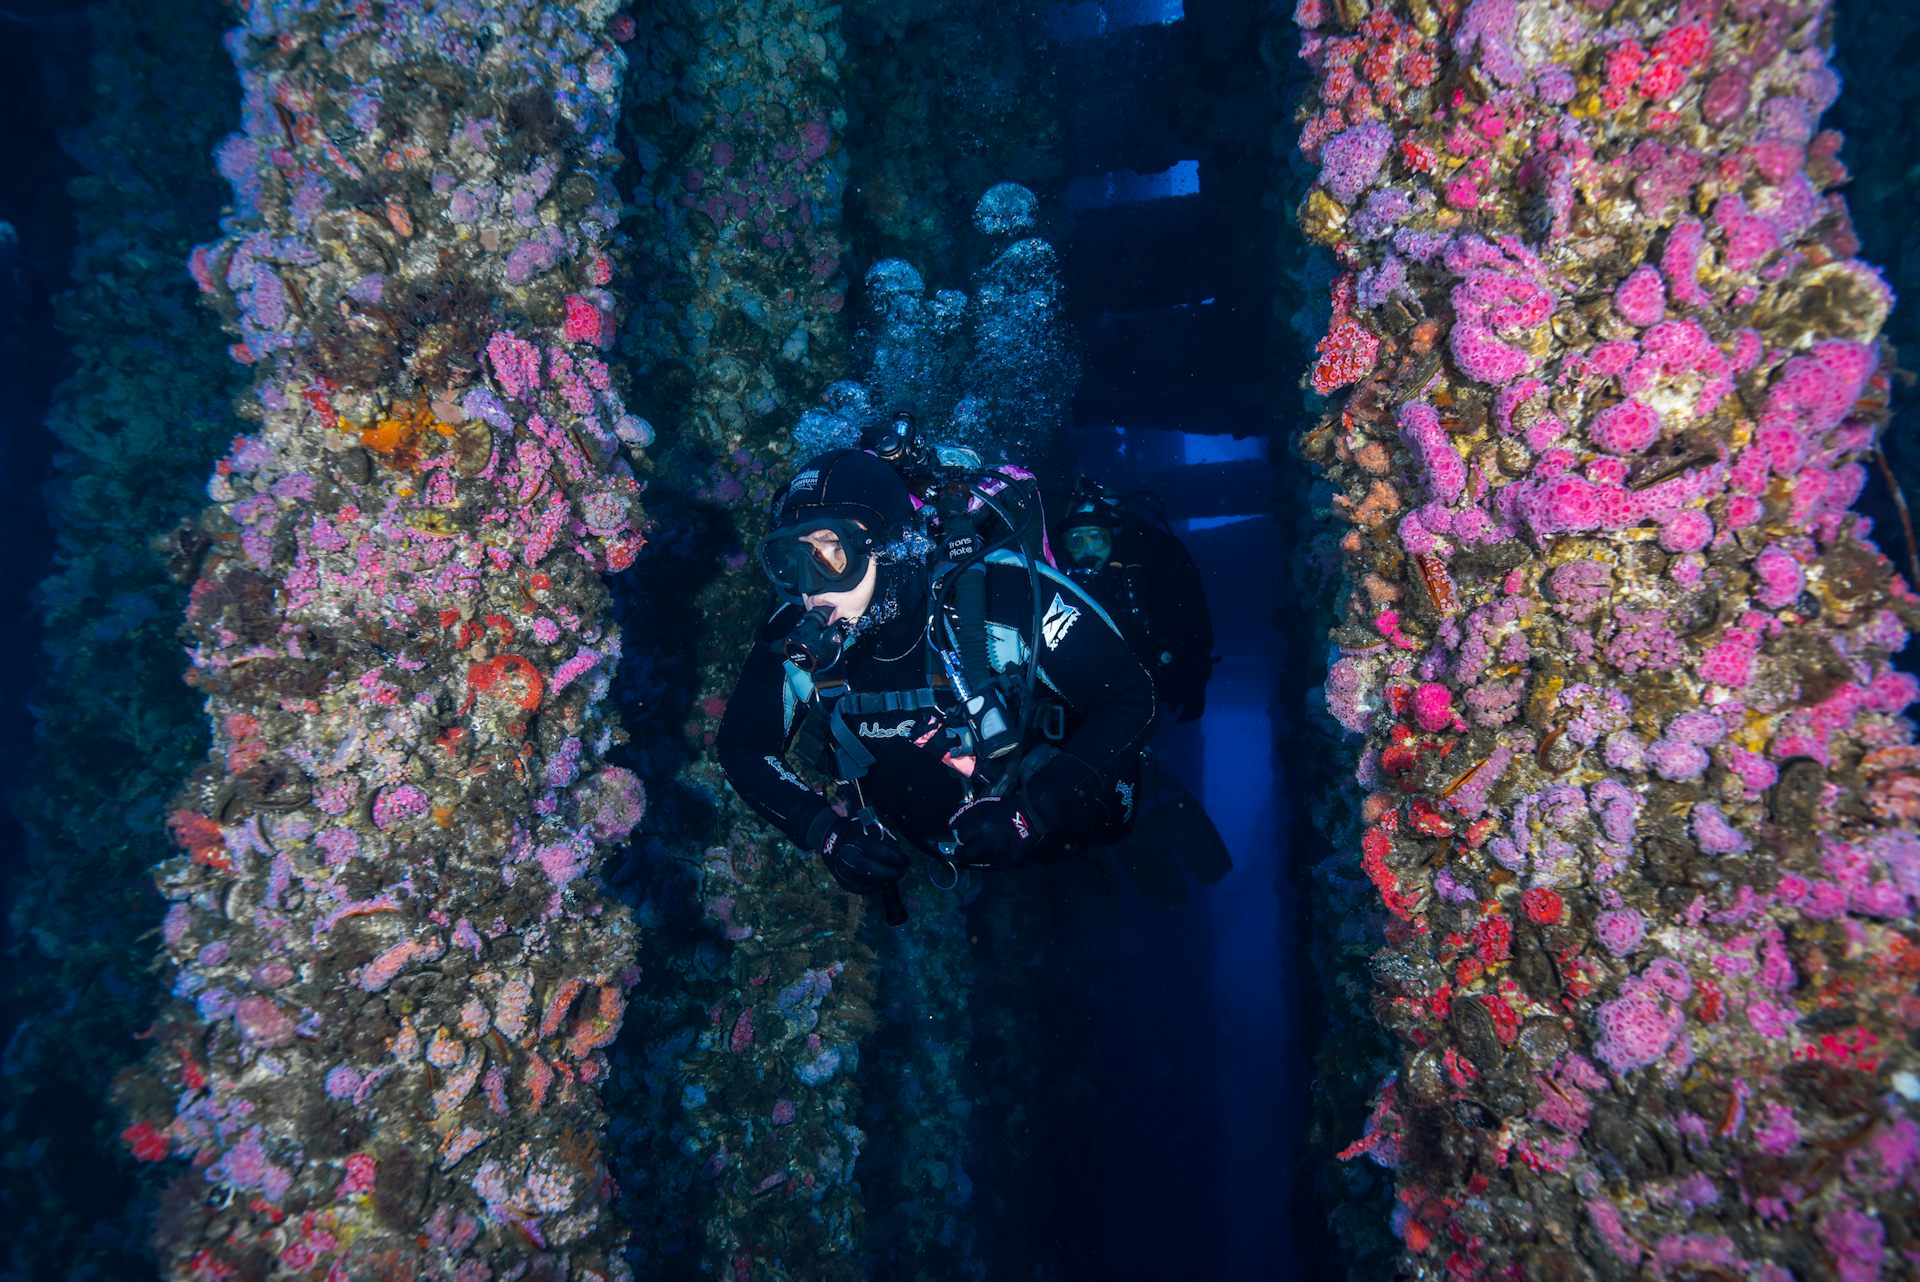 Potápěč proplouvá mezi dvěma sloupy pokrytými mořskými živočichy.